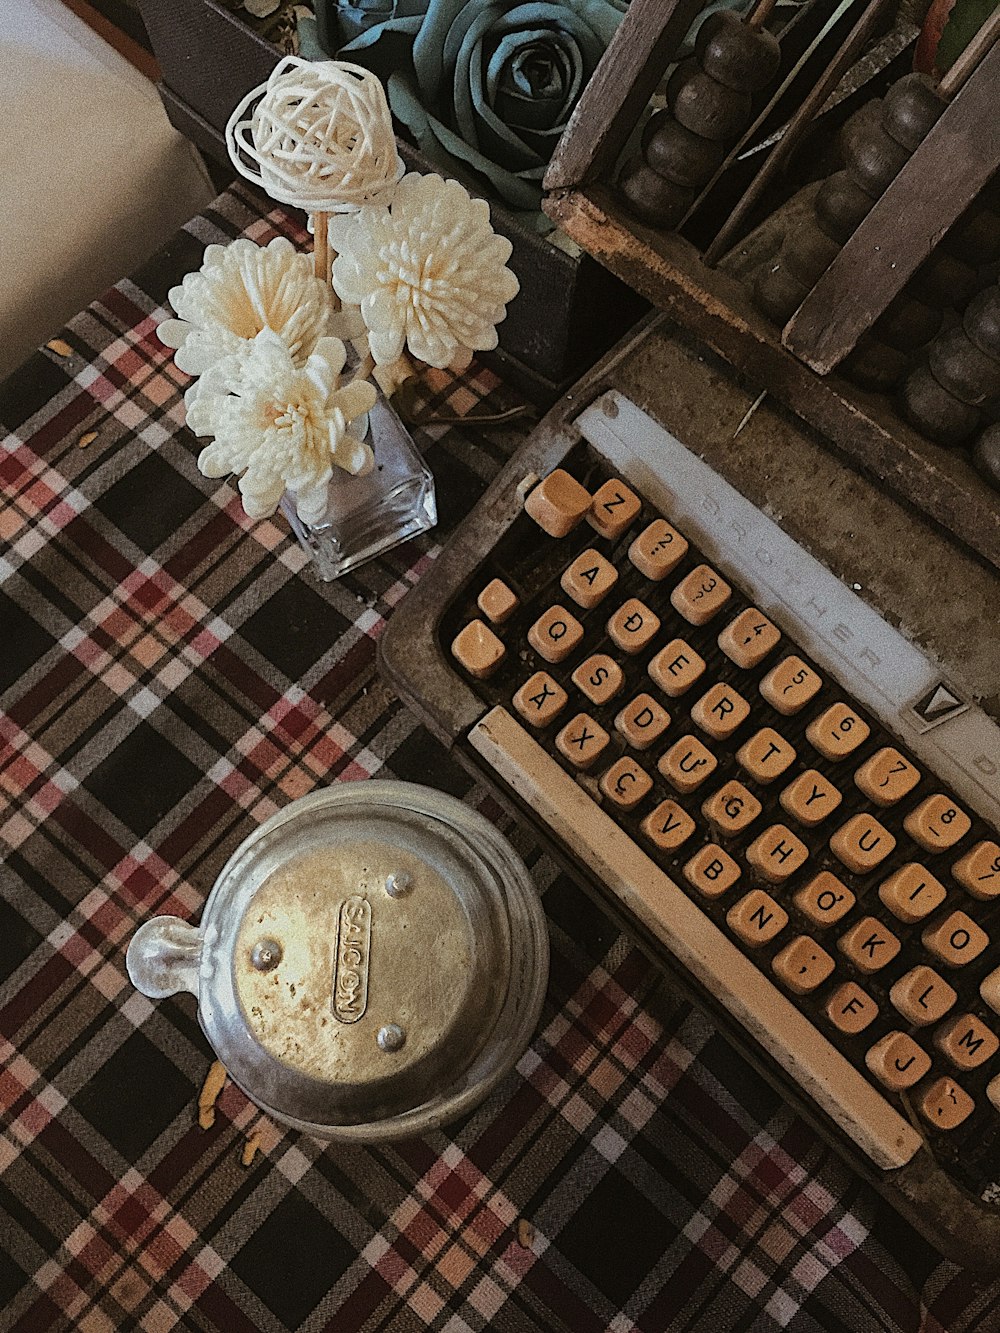 white flower centerpiece beside typewriter